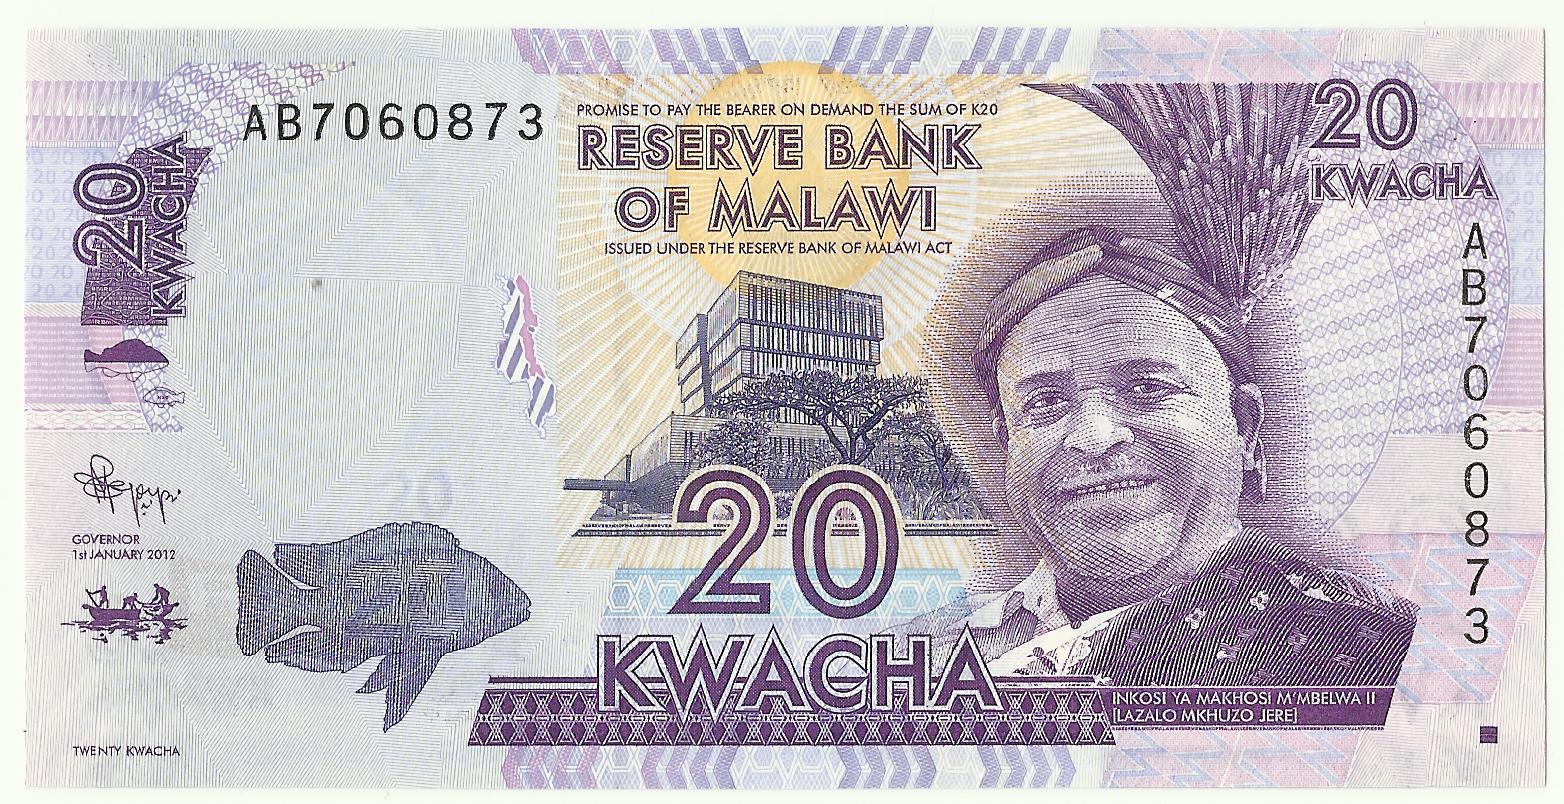 Usd To Zambian Kwacha Chart